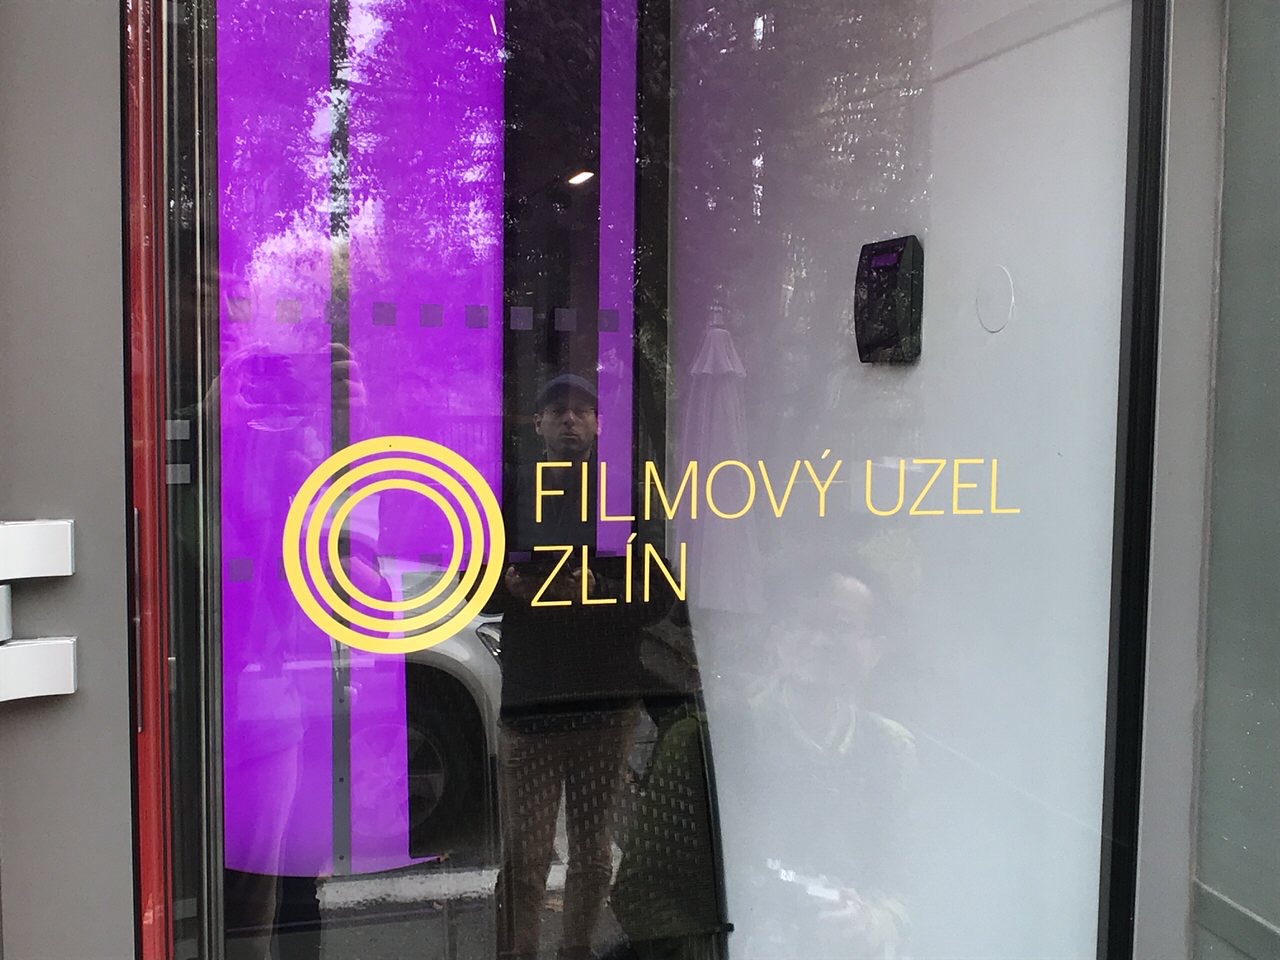 ズリーンのフィルムスタジオ「FILMOVY UZEL ZLIN（フォルモヴィー・ウゼル・ズリーン）」ストップモーションアニメ作成体験